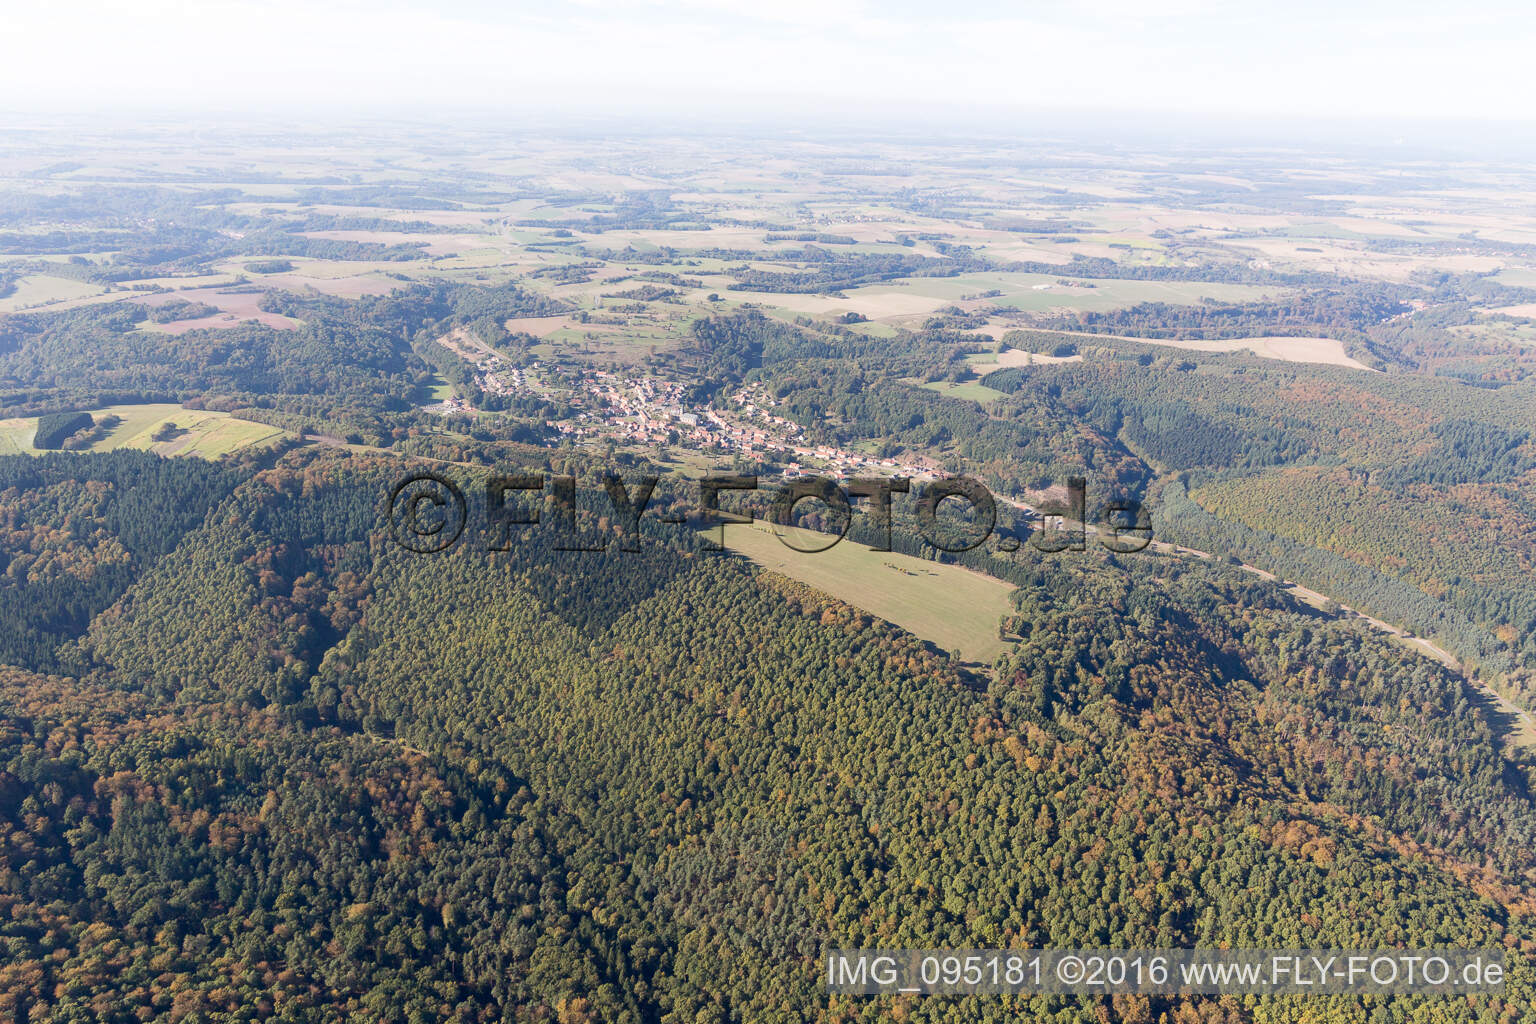 Vue aérienne de Schorbach dans le département Moselle, France